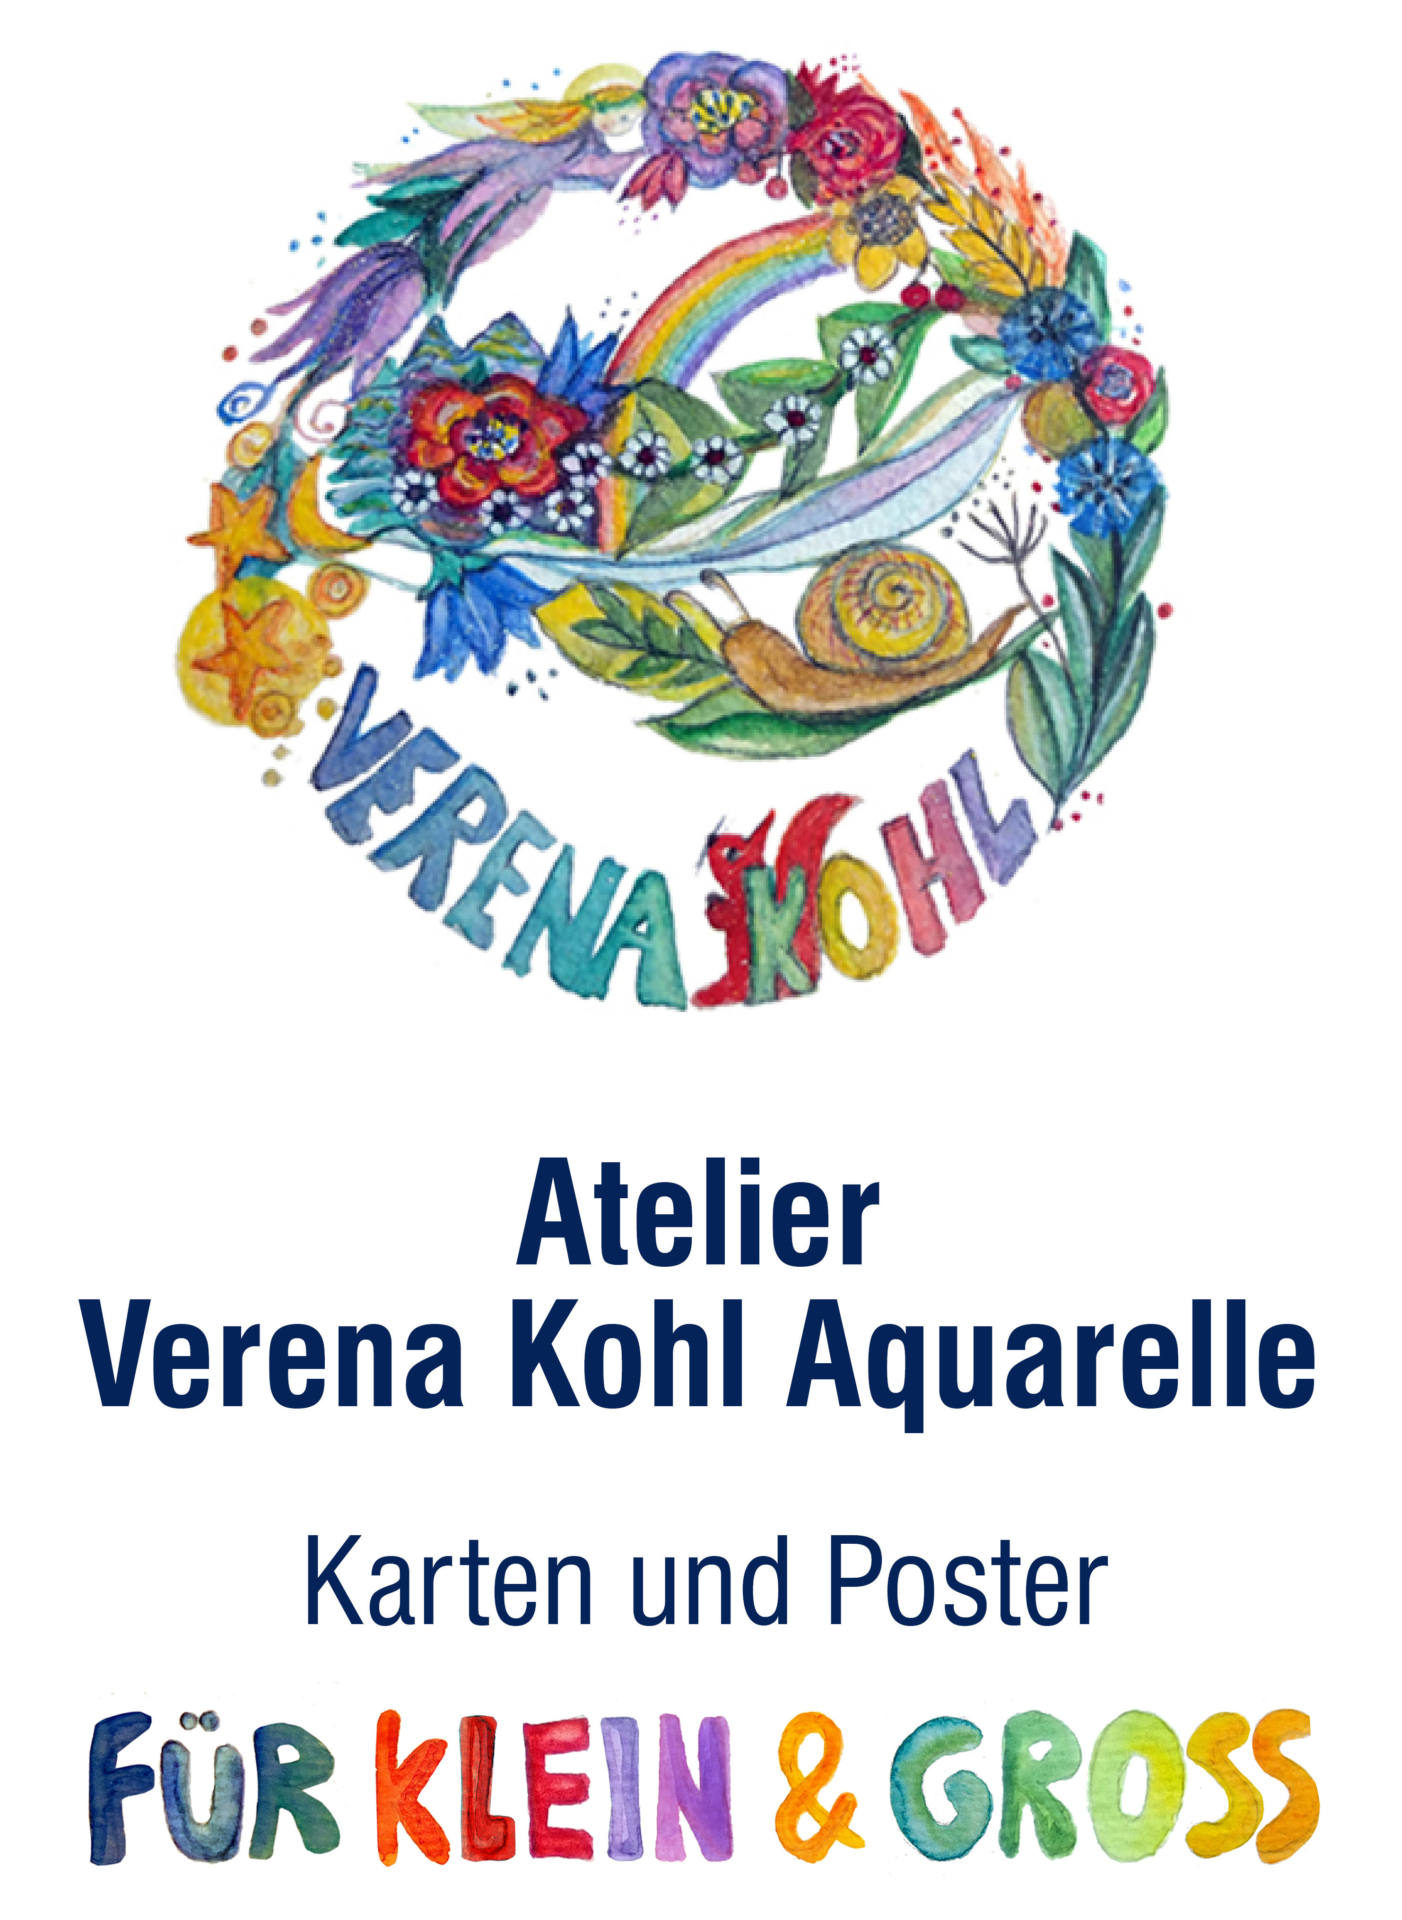 Atelier Verena Kohl